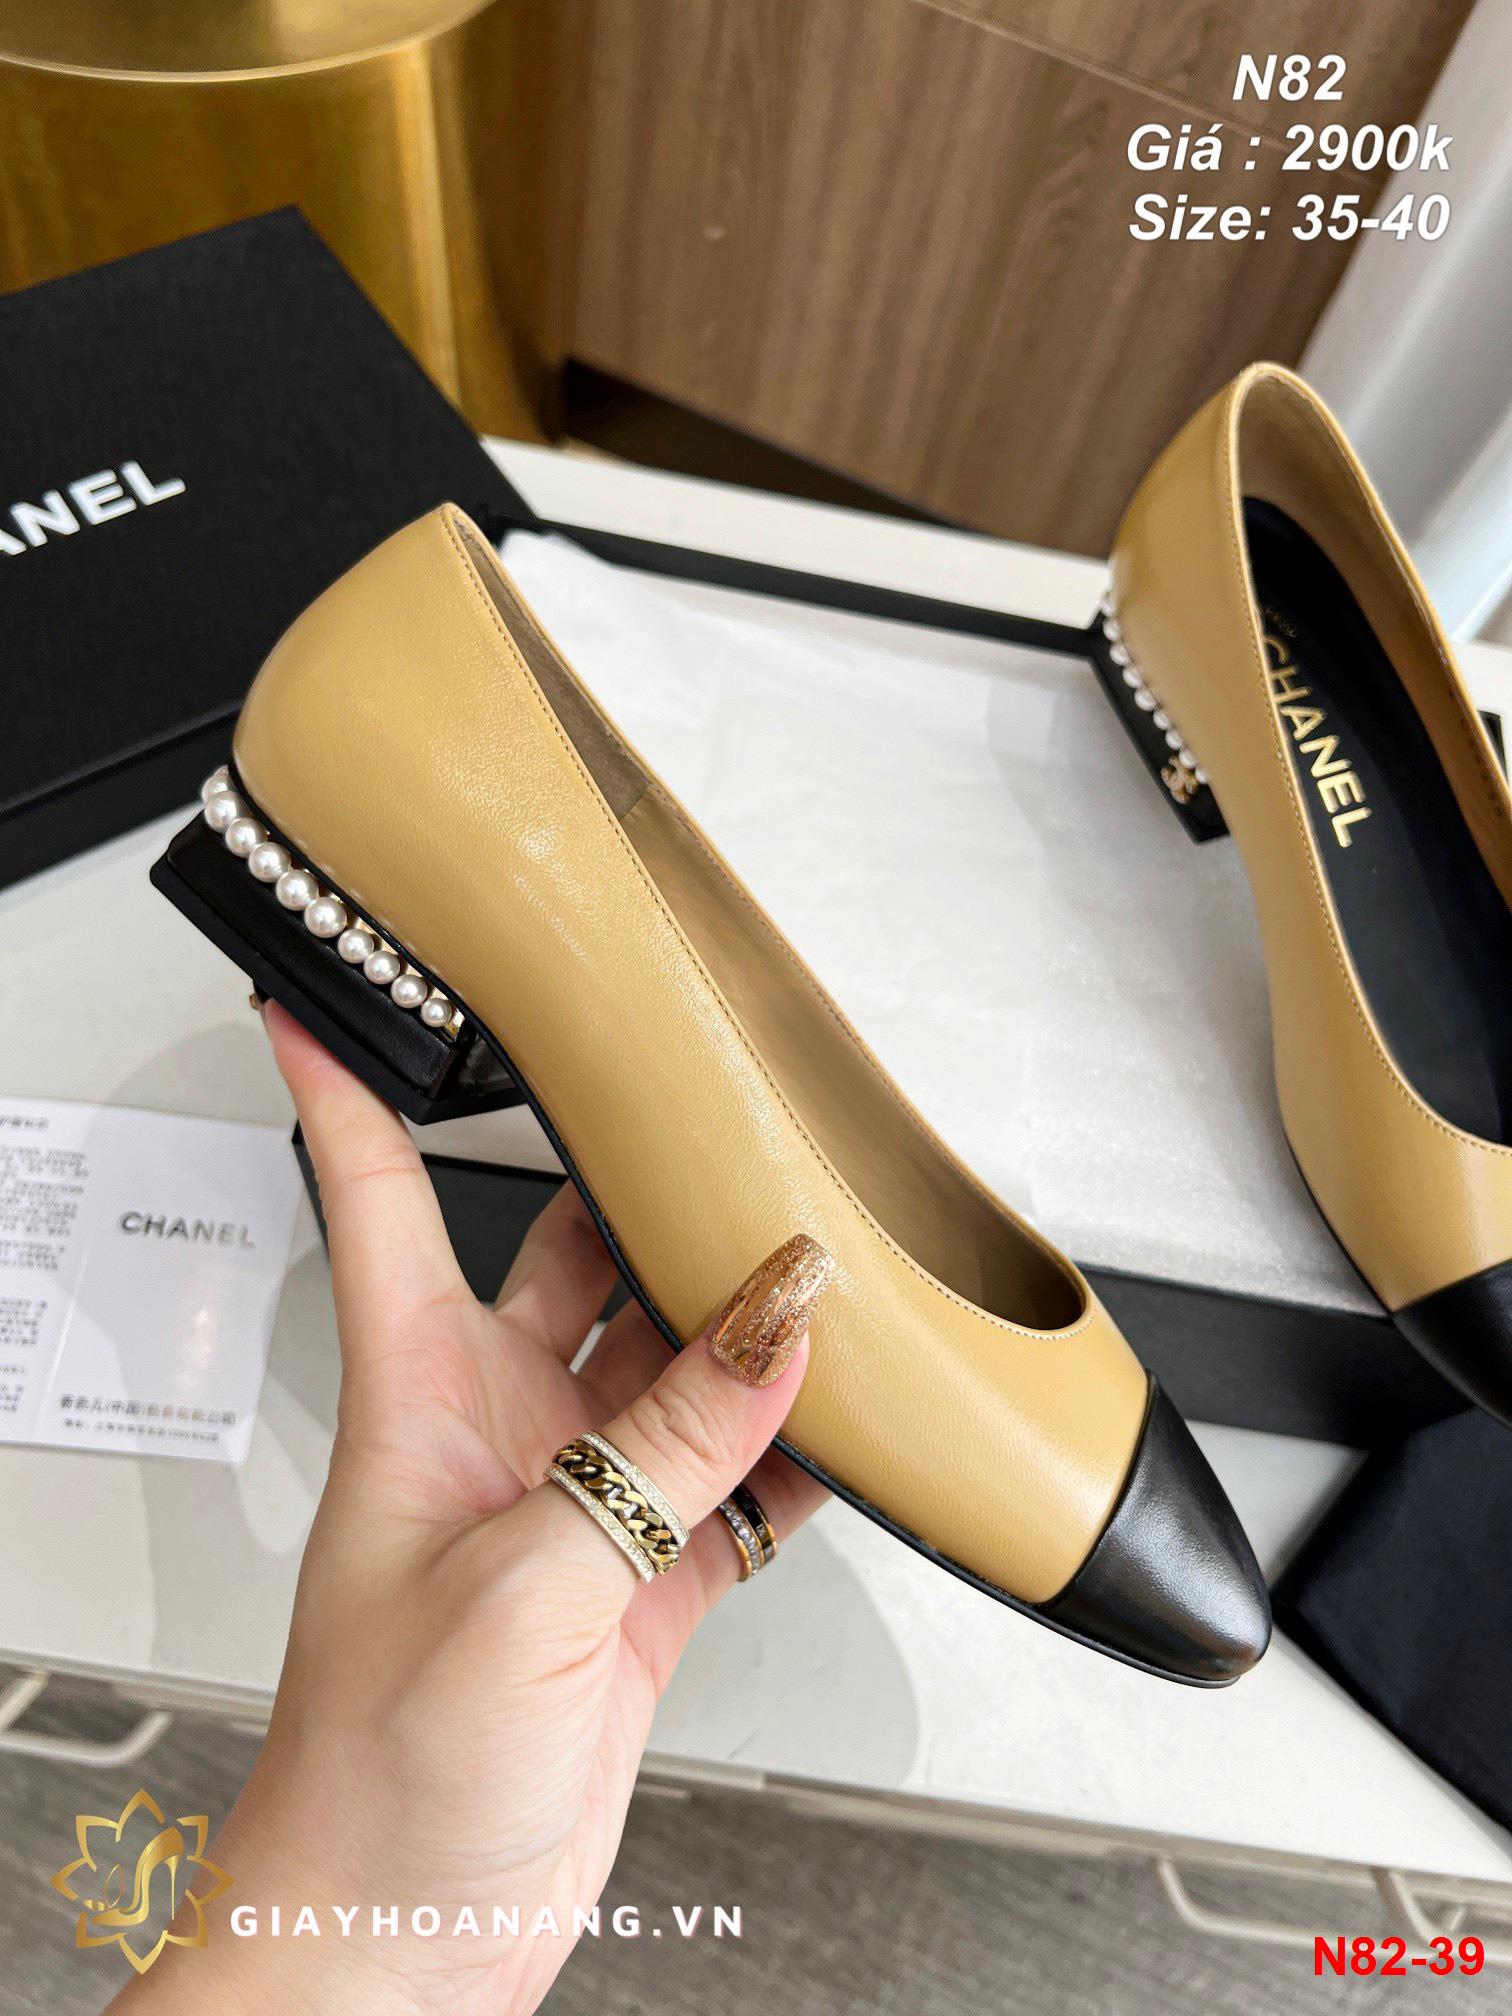 N82-39 Chanel giày bệt siêu cấp